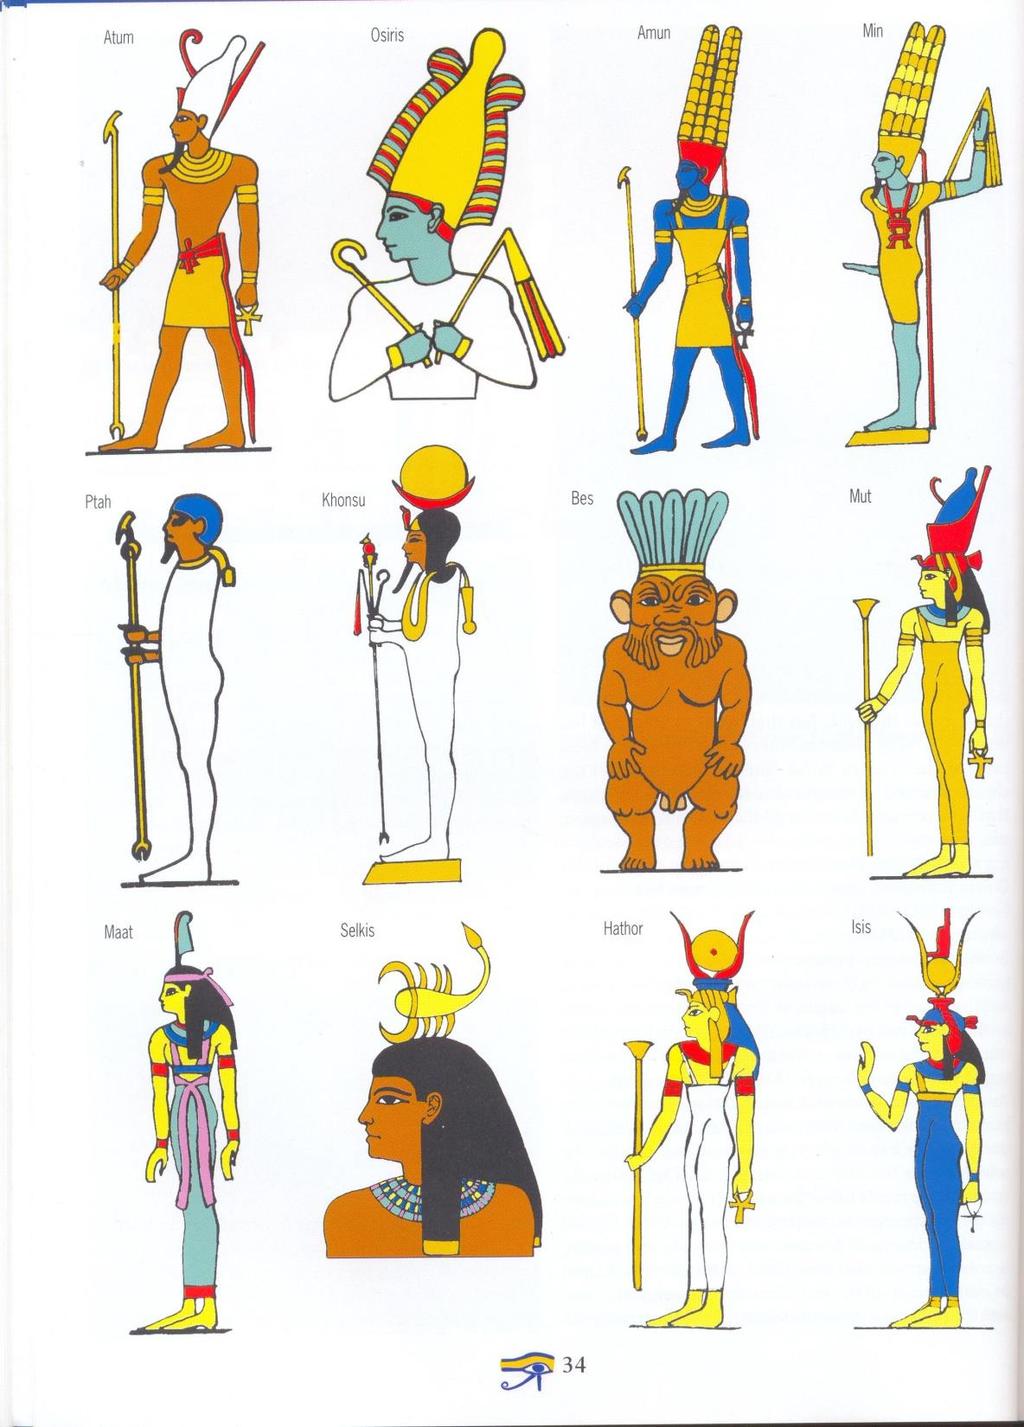 Lower Egypt Red crown Upper Egypt White crown RA Sun God Osiris God of the underworld Horus- Falcon head